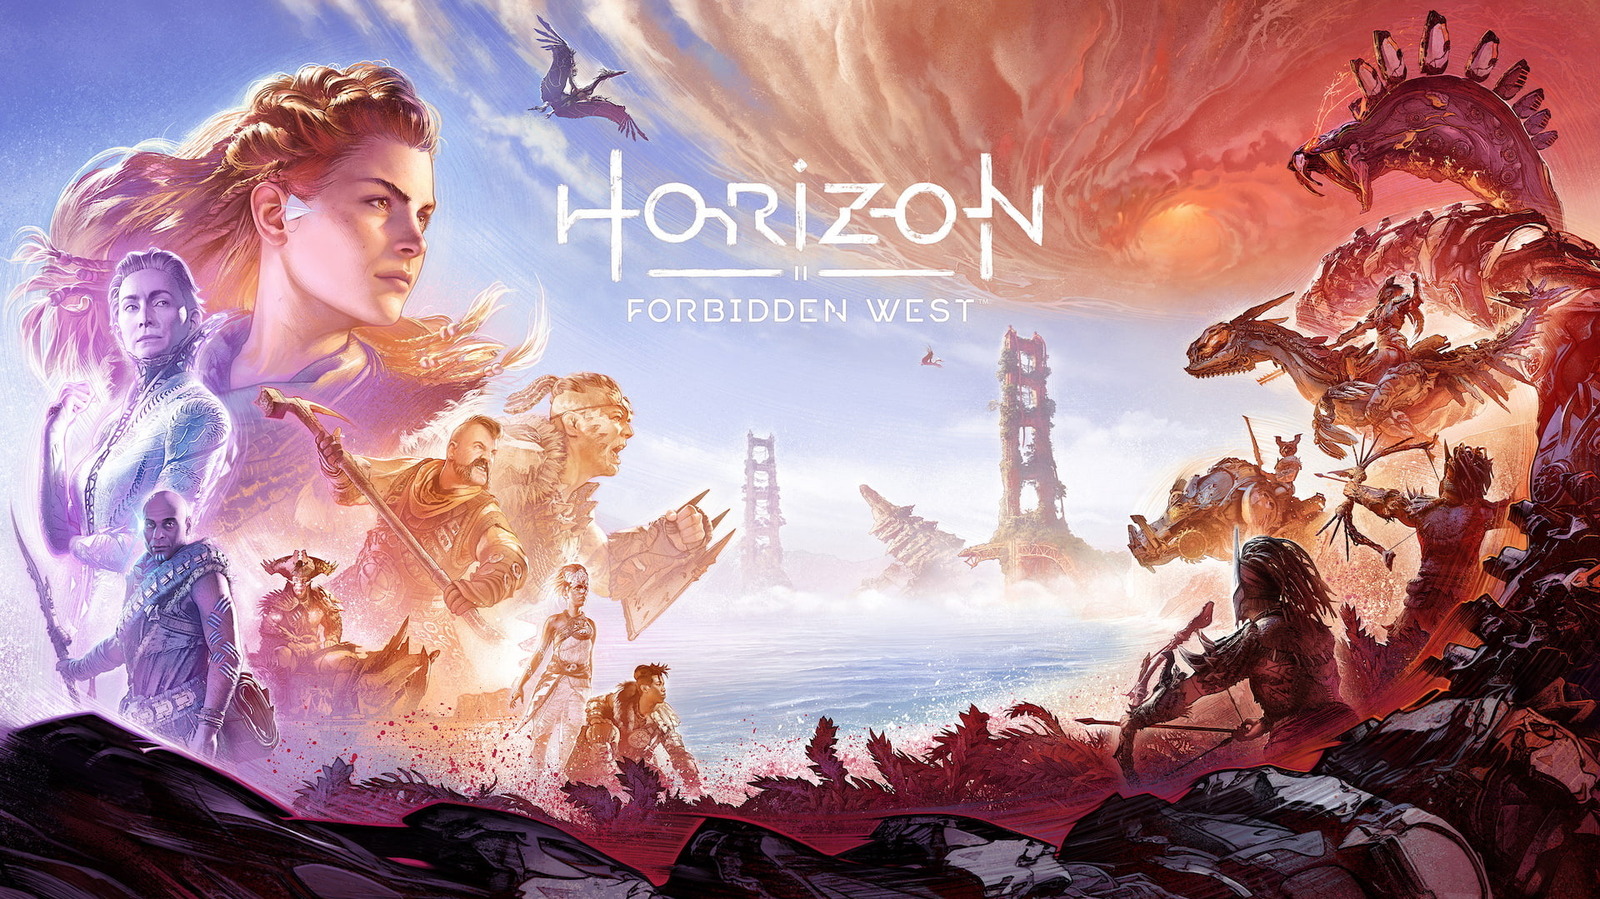 Horizon Forbidden West Review - Squad Goals - GameSpot